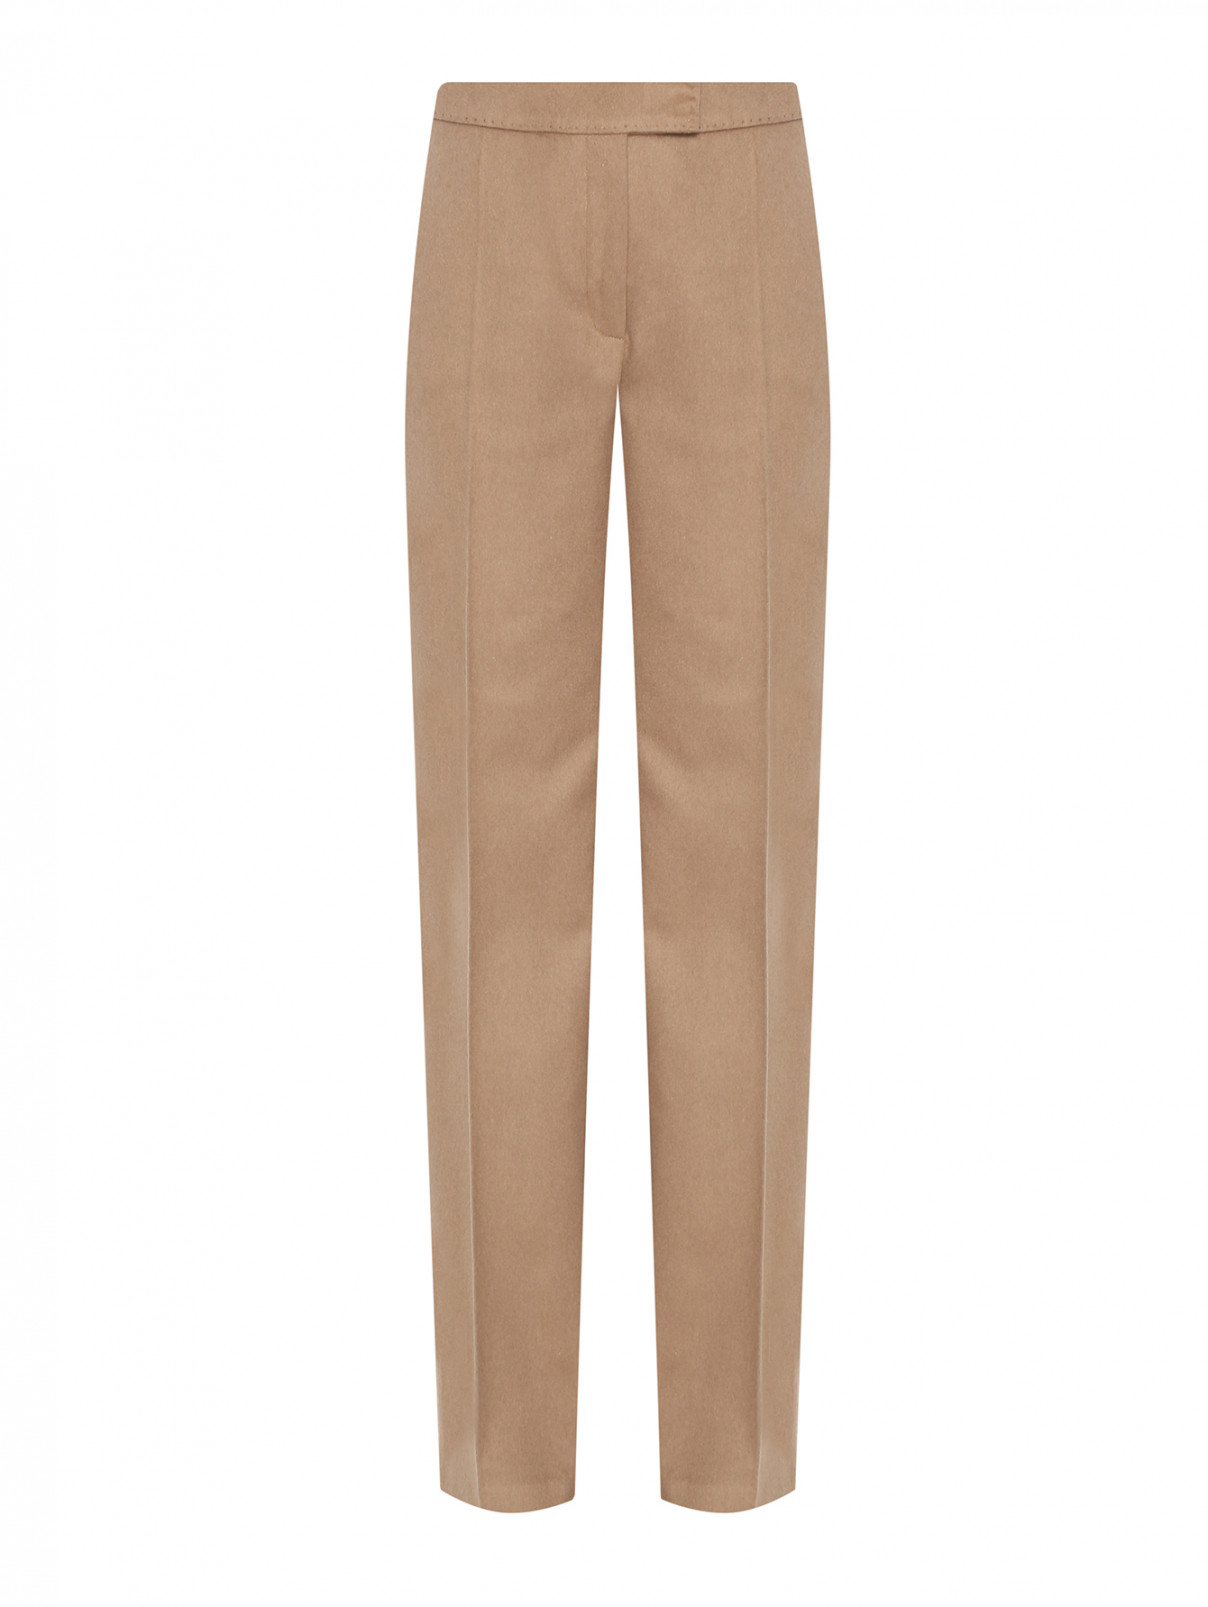 Однотонные брюки из кашемира Luisa Spagnoli  –  Общий вид  – Цвет:  Бежевый